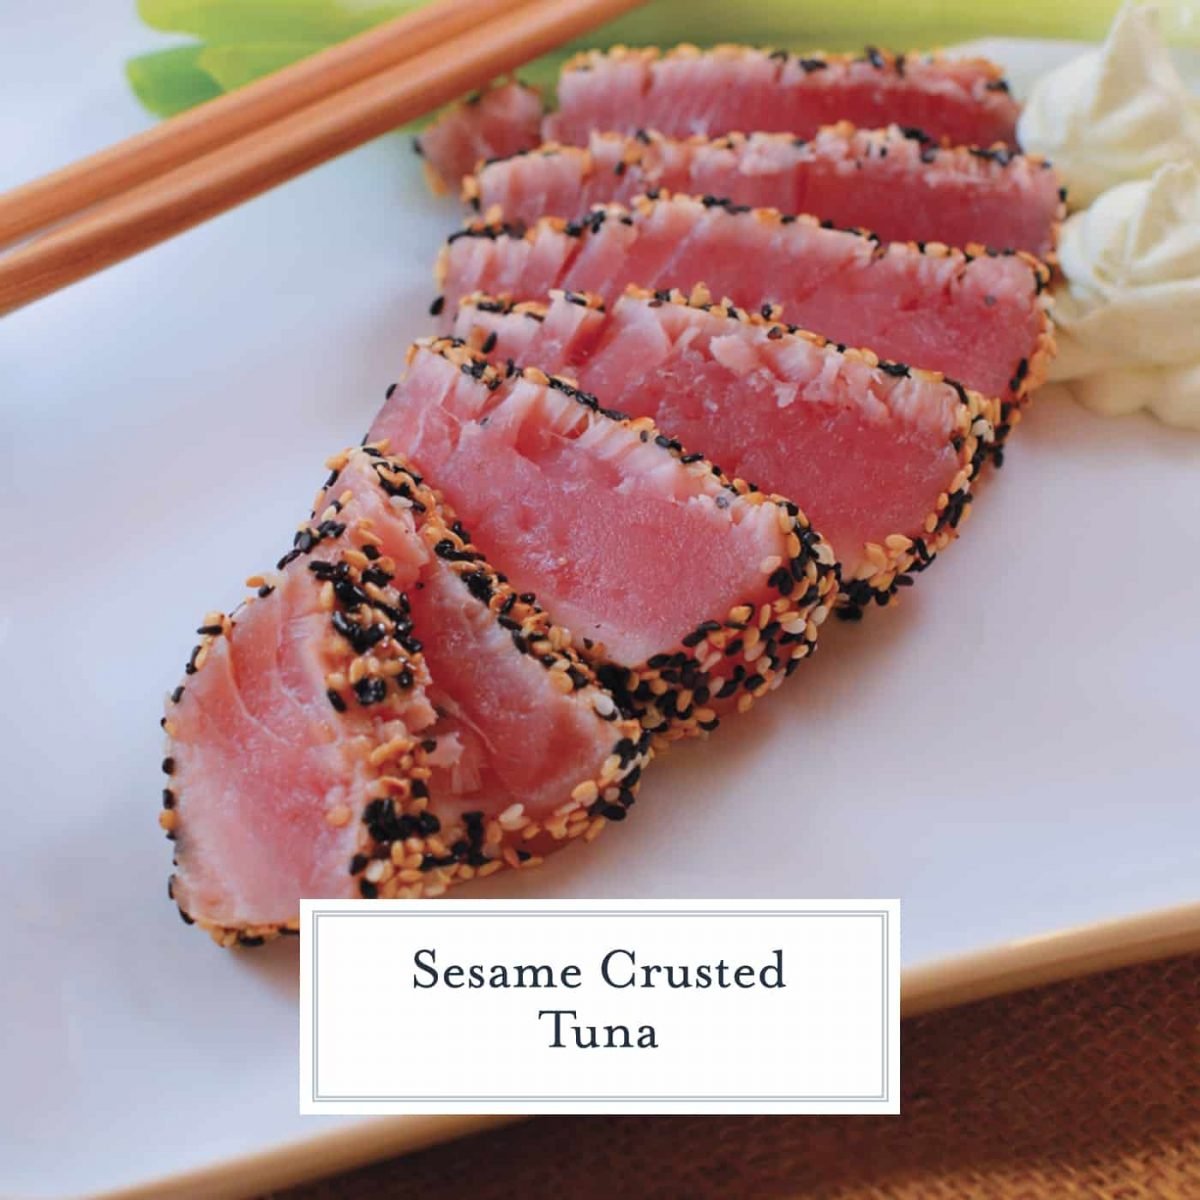 Sesame Crusted Tuna with Wasabi Cream